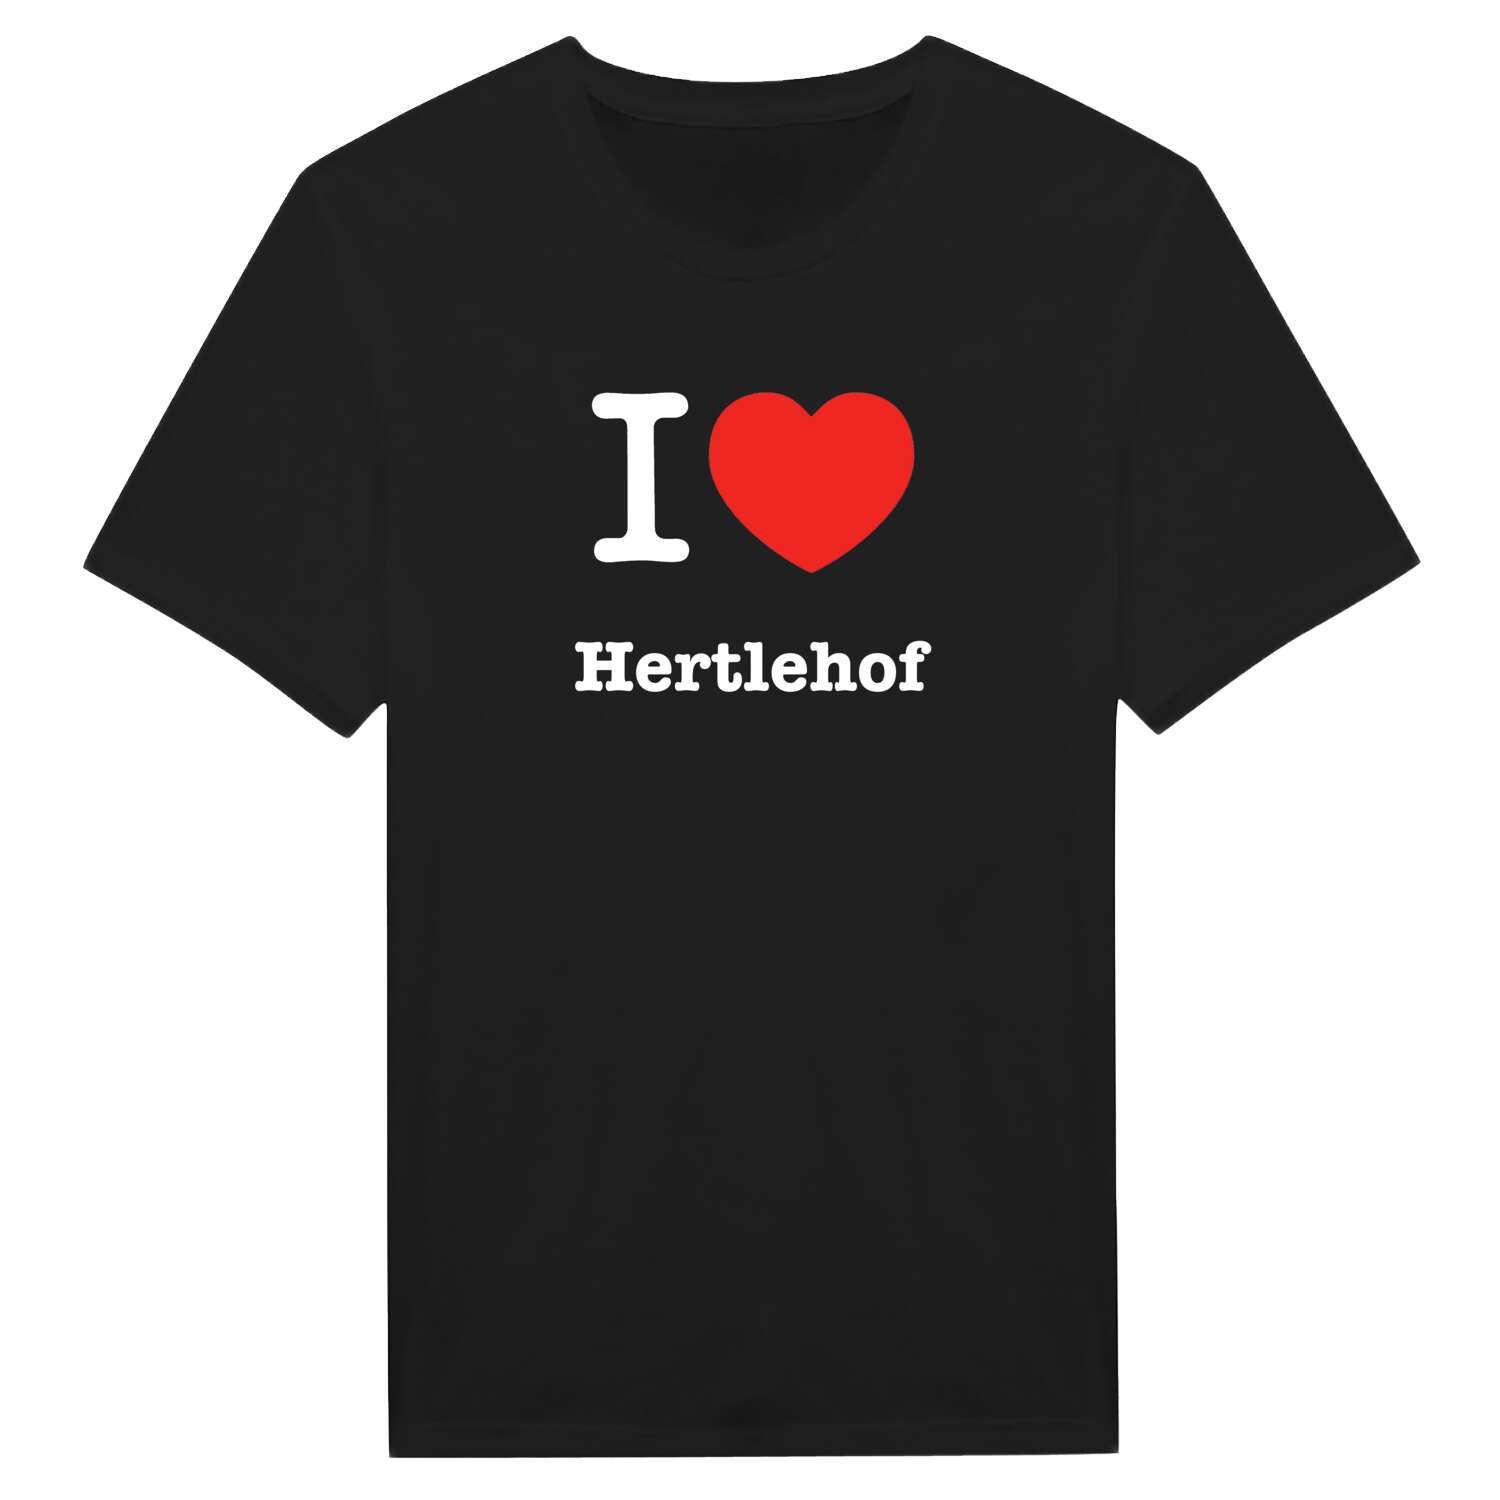 Hertlehof T-Shirt »I love«